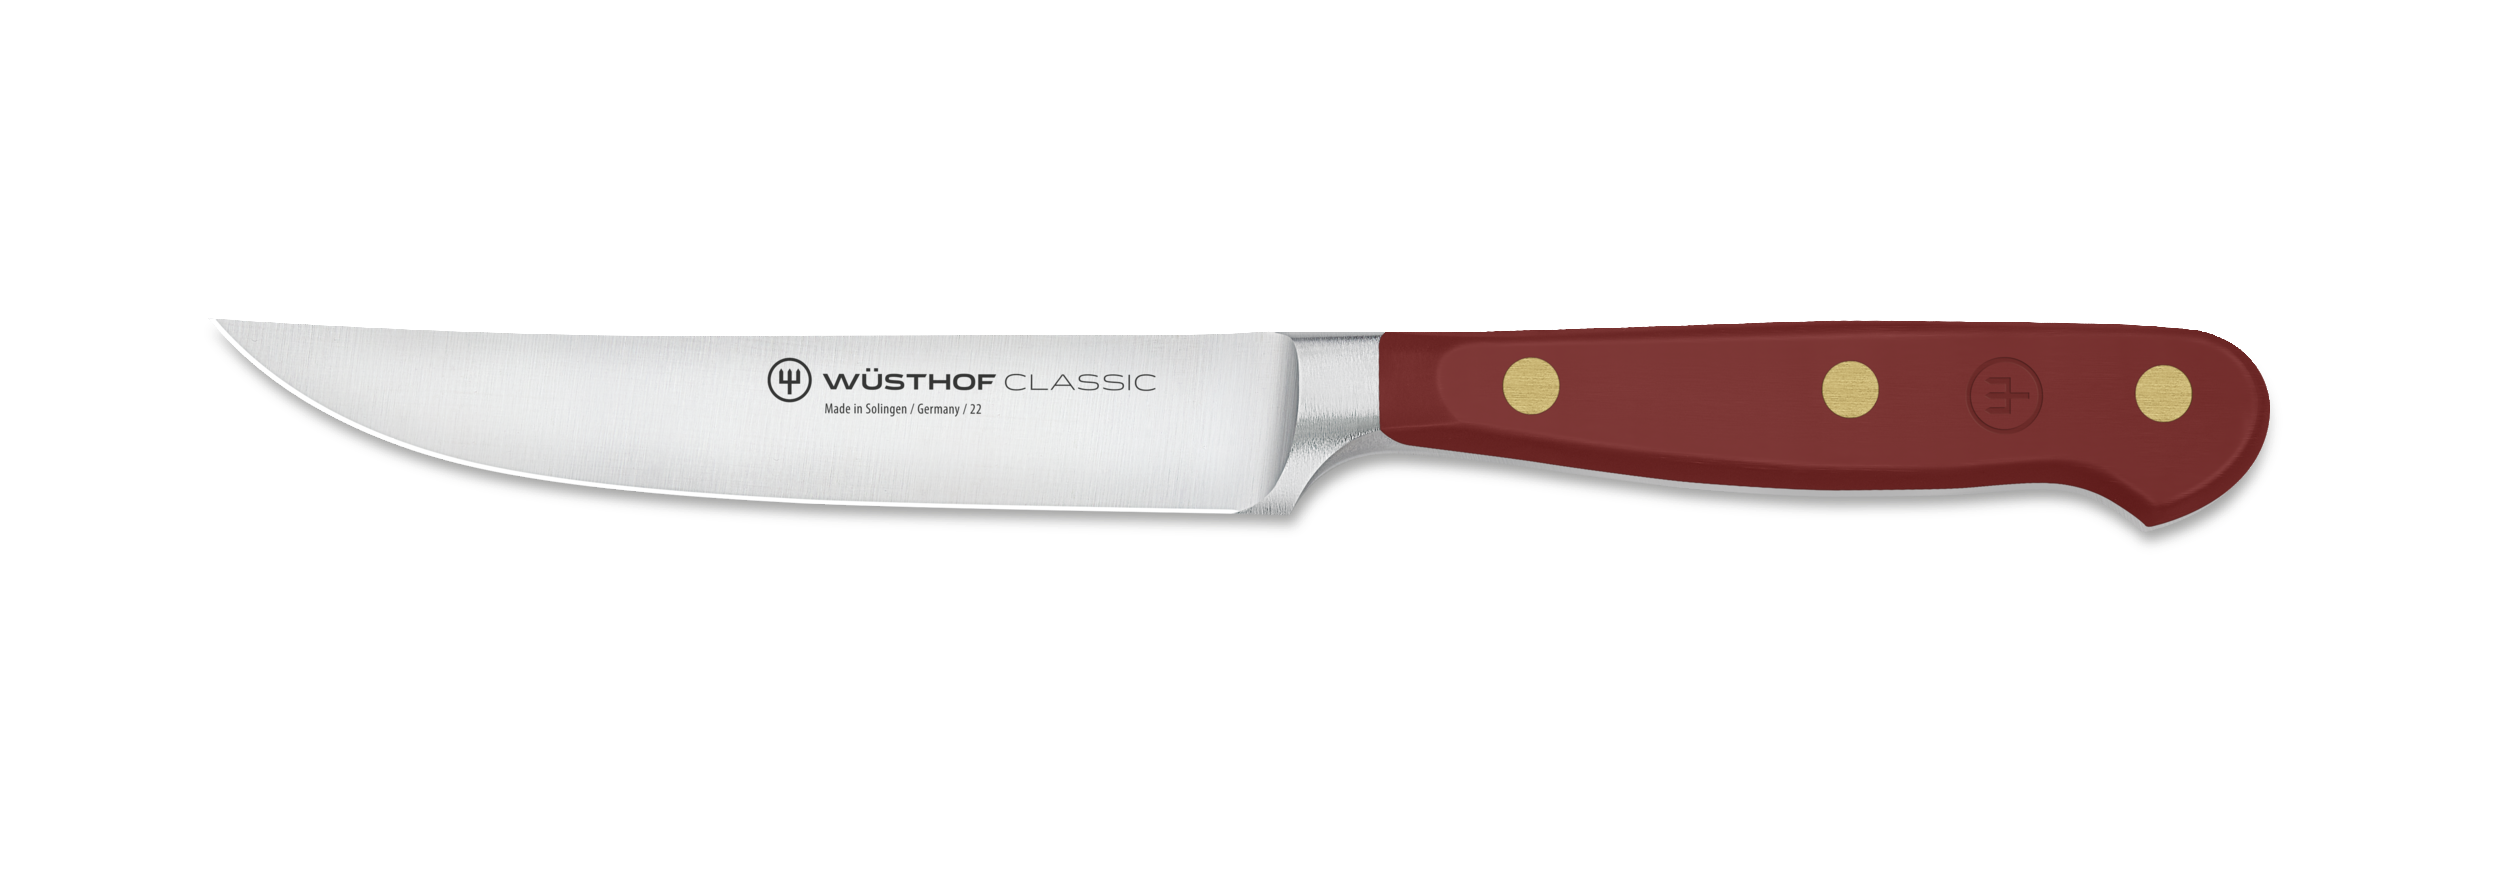 Steak knives CLASSIC COLOUR, set of 4, 12 cm, coral peach, Wüsthof 